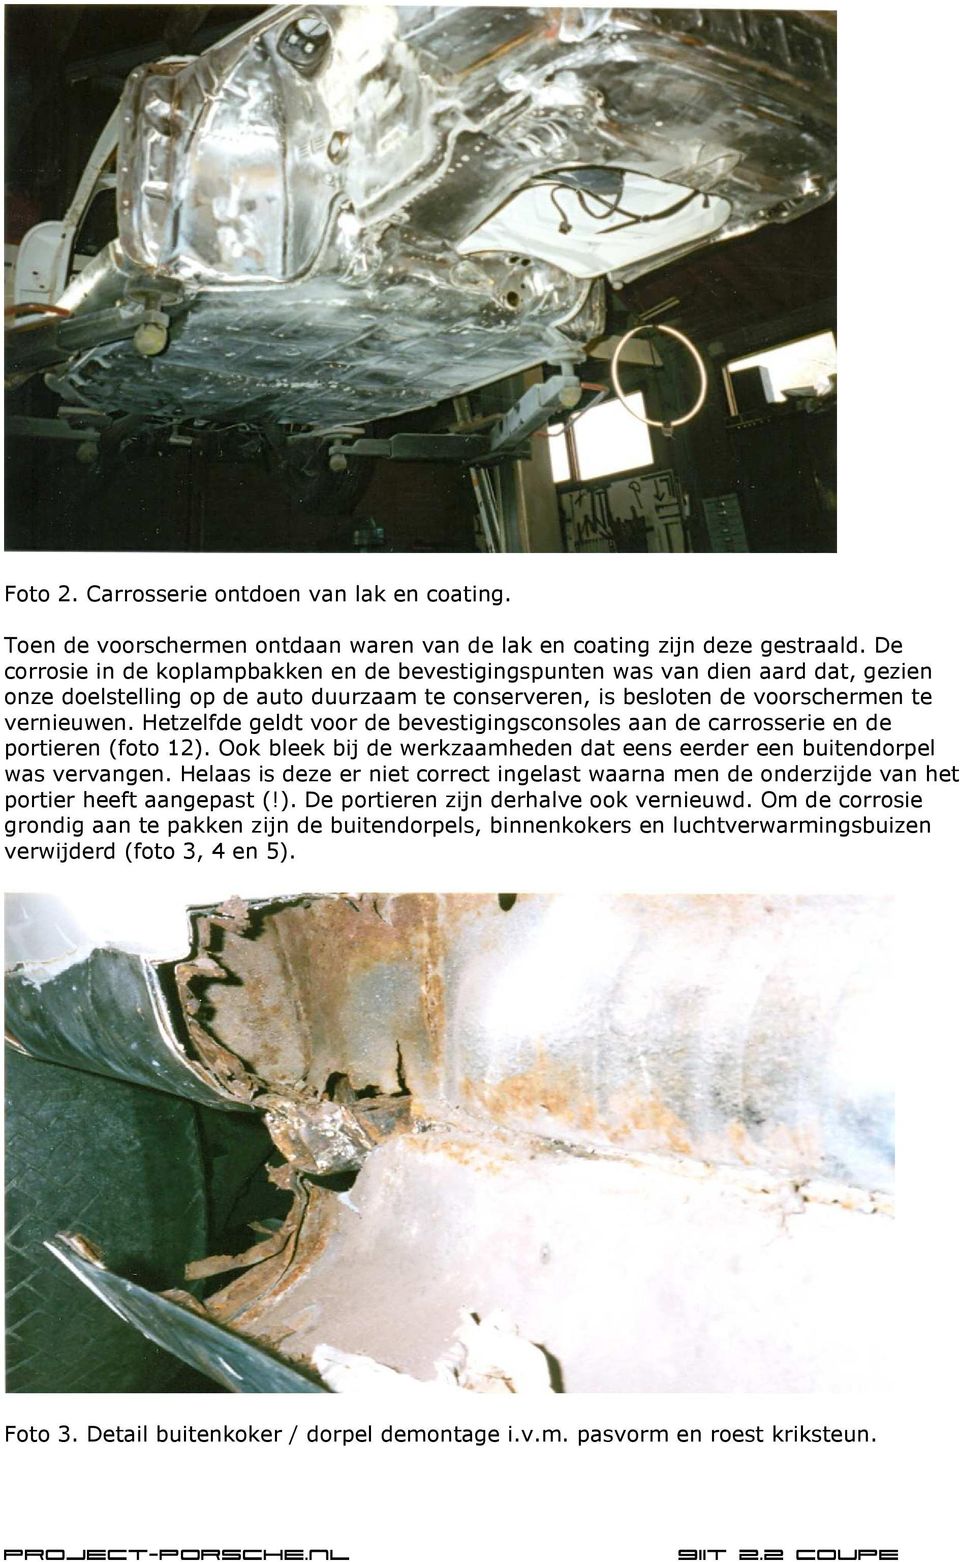 Hetzelfde geldt voor de bevestigingsconsoles aan de carrosserie en de portieren (foto 12). Ook bleek bij de werkzaamheden dat eens eerder een buitendorpel was vervangen.